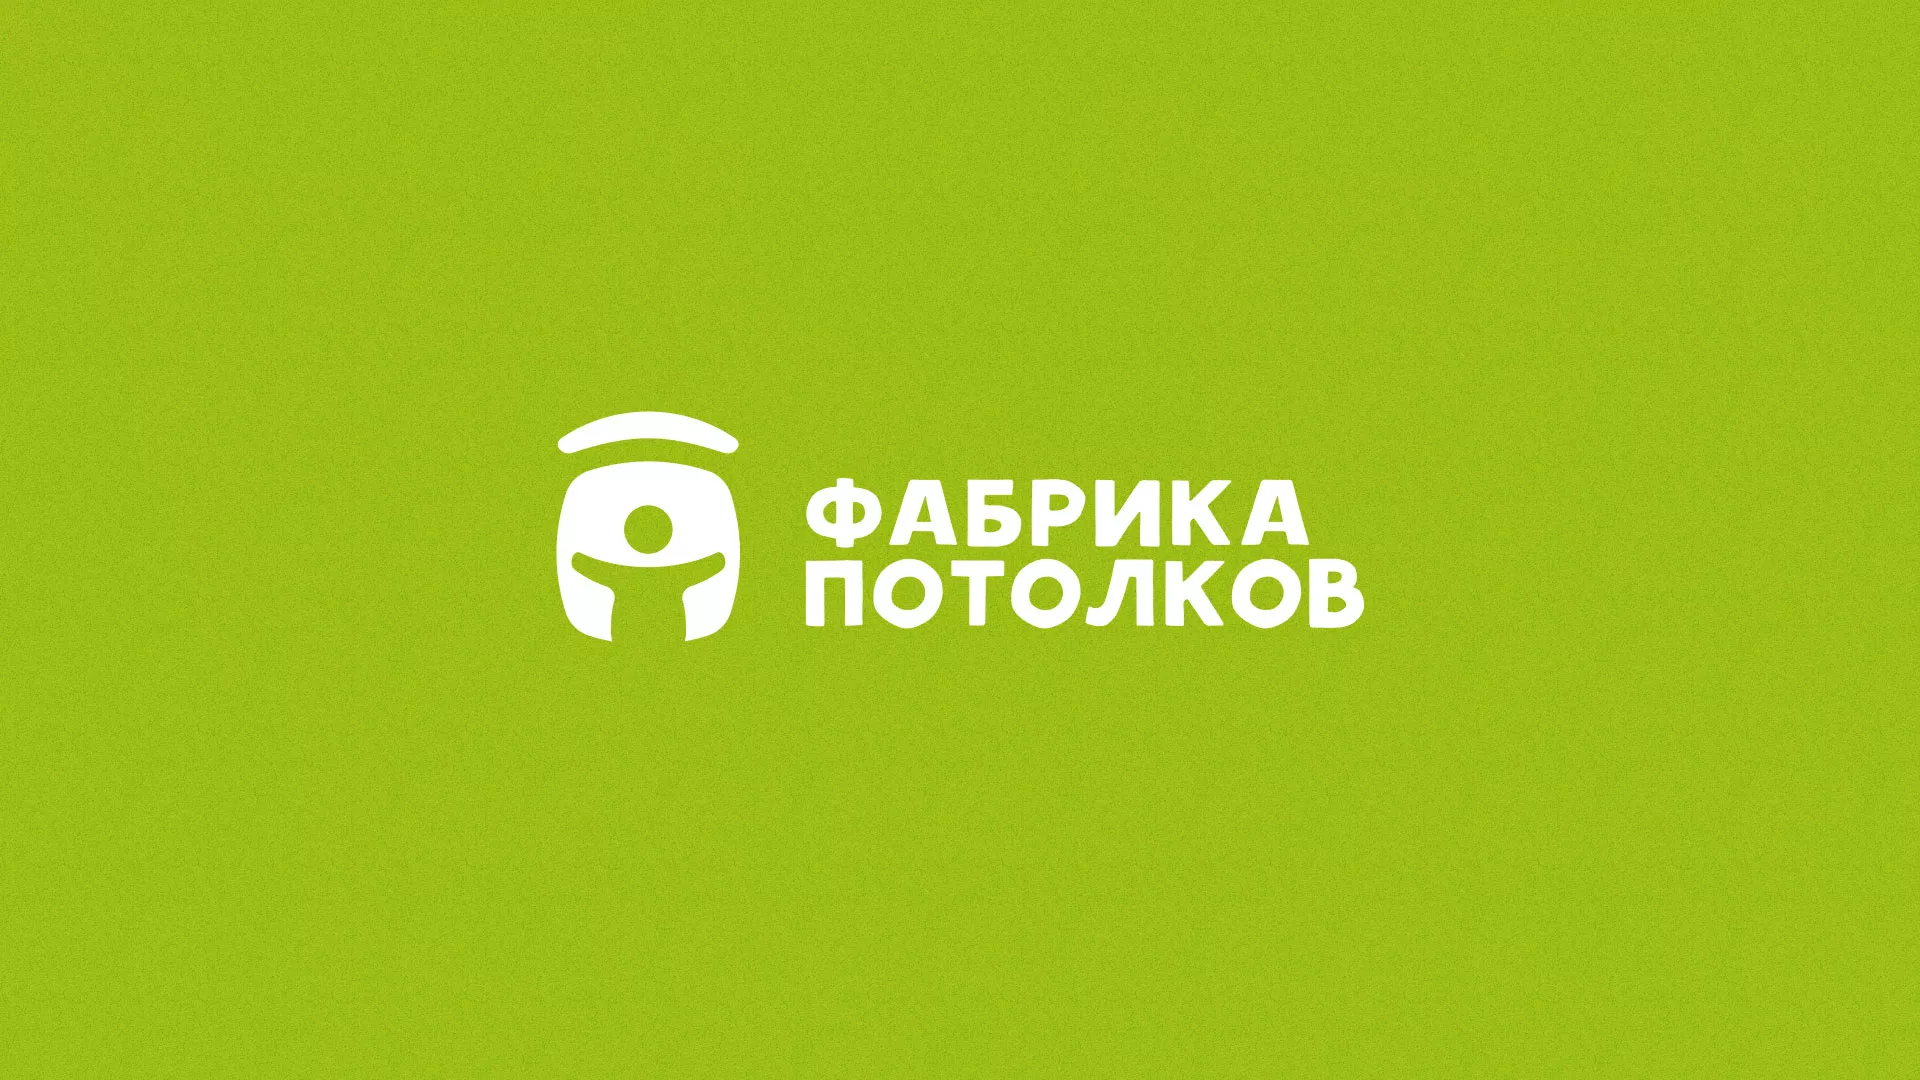 Разработка логотипа для производства натяжных потолков в Грозном